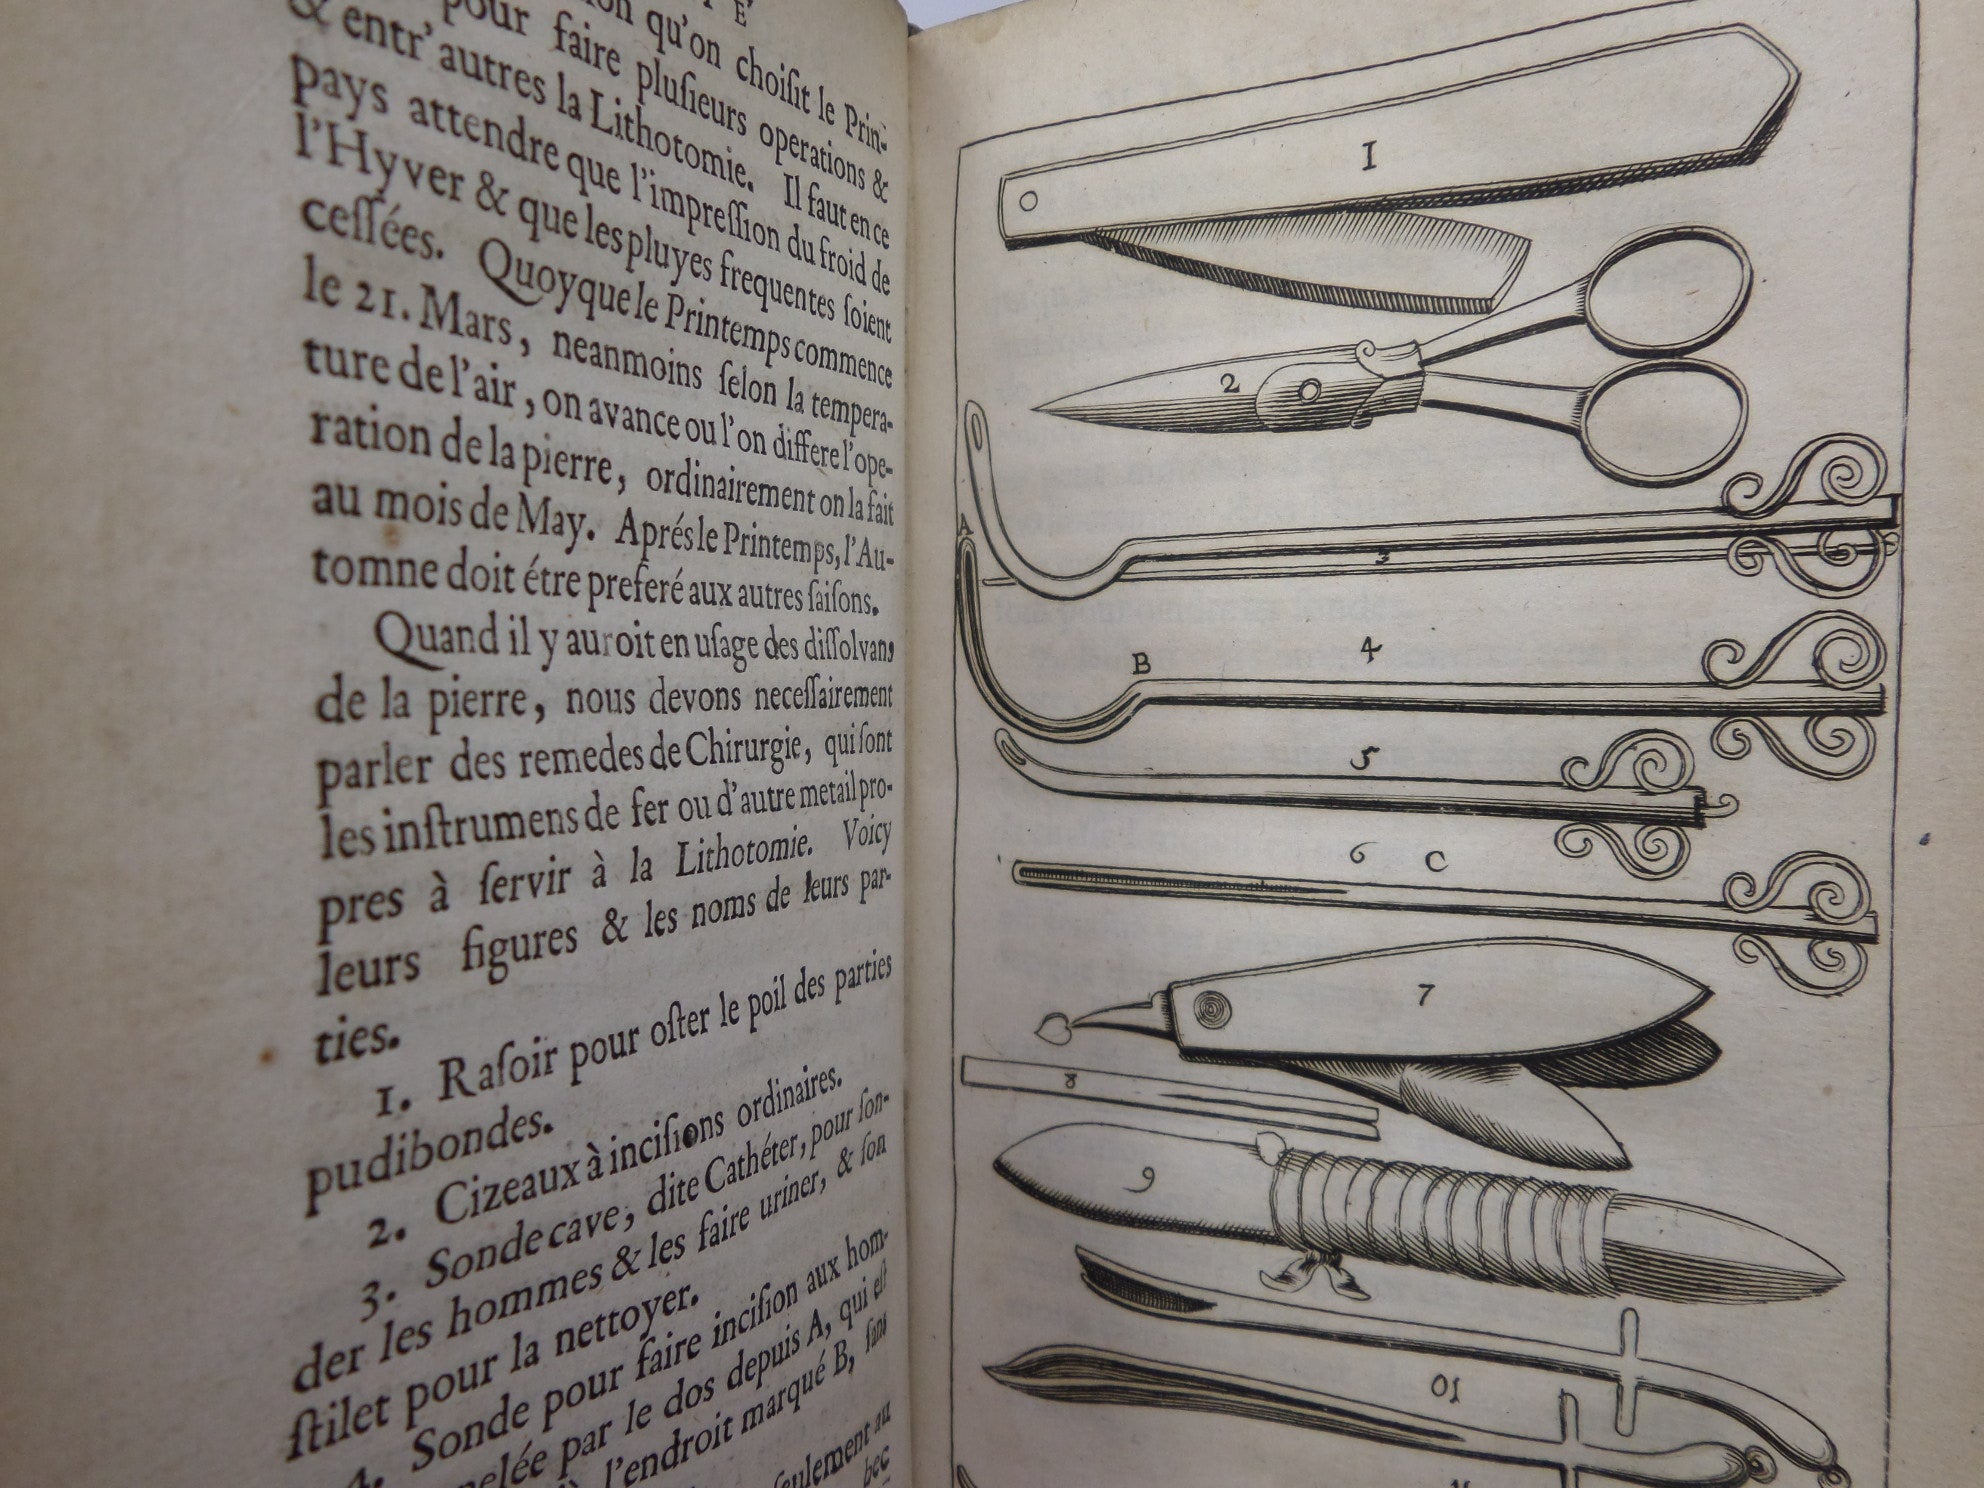 TRAITE DE LA LITHOTOMIE OU DE L'EXTRACTION DE LA PIERRE HORS DE LA VESSIE 1686